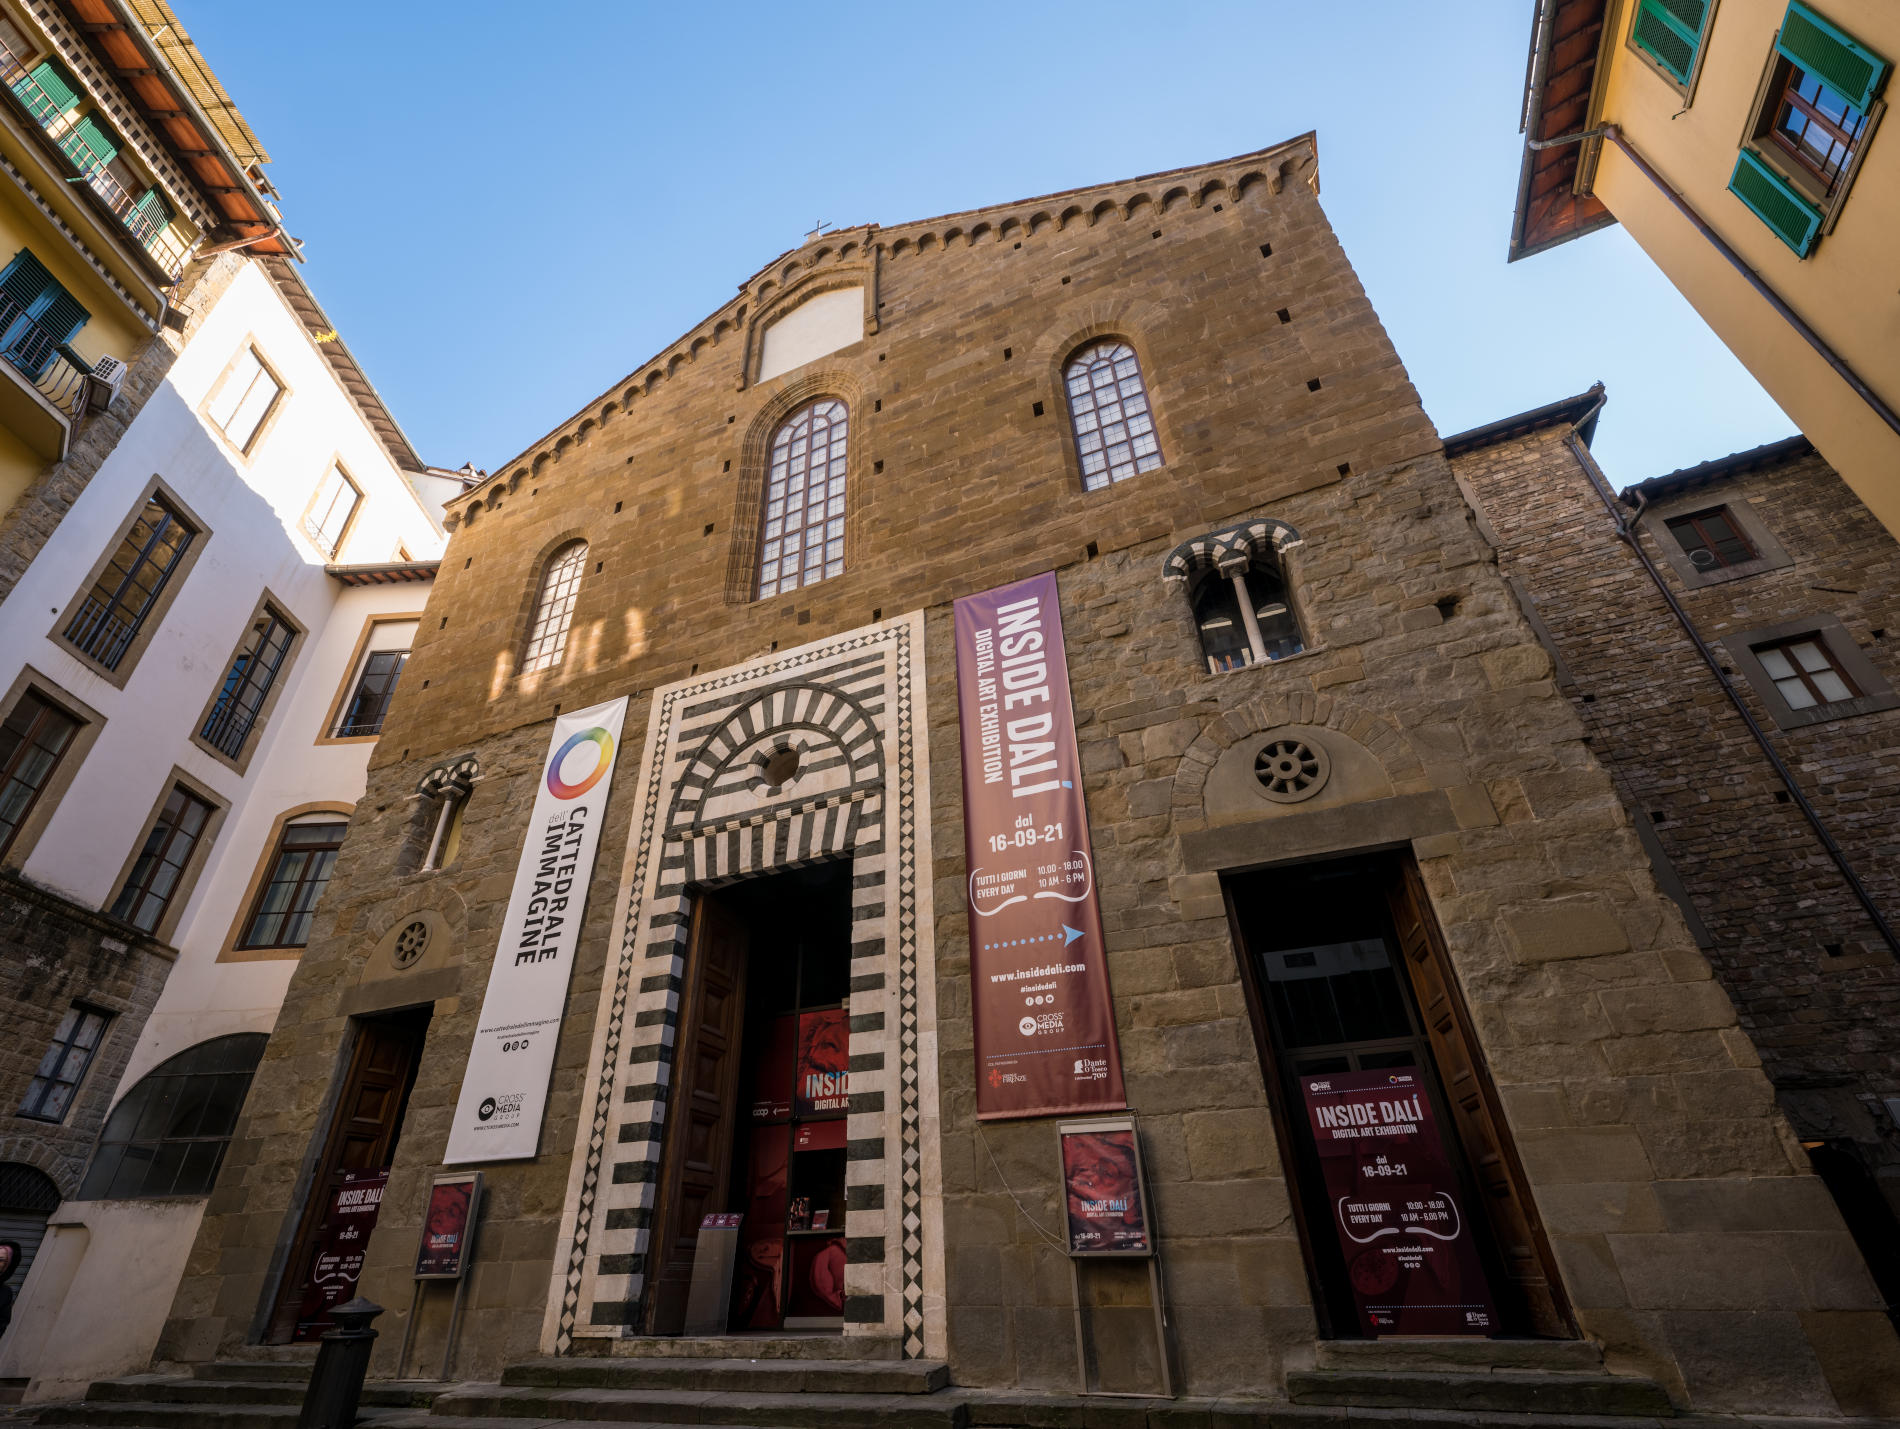 Brevissime: a Firenze lezioni di storia delle arti a cura della casa editrice Centro Di